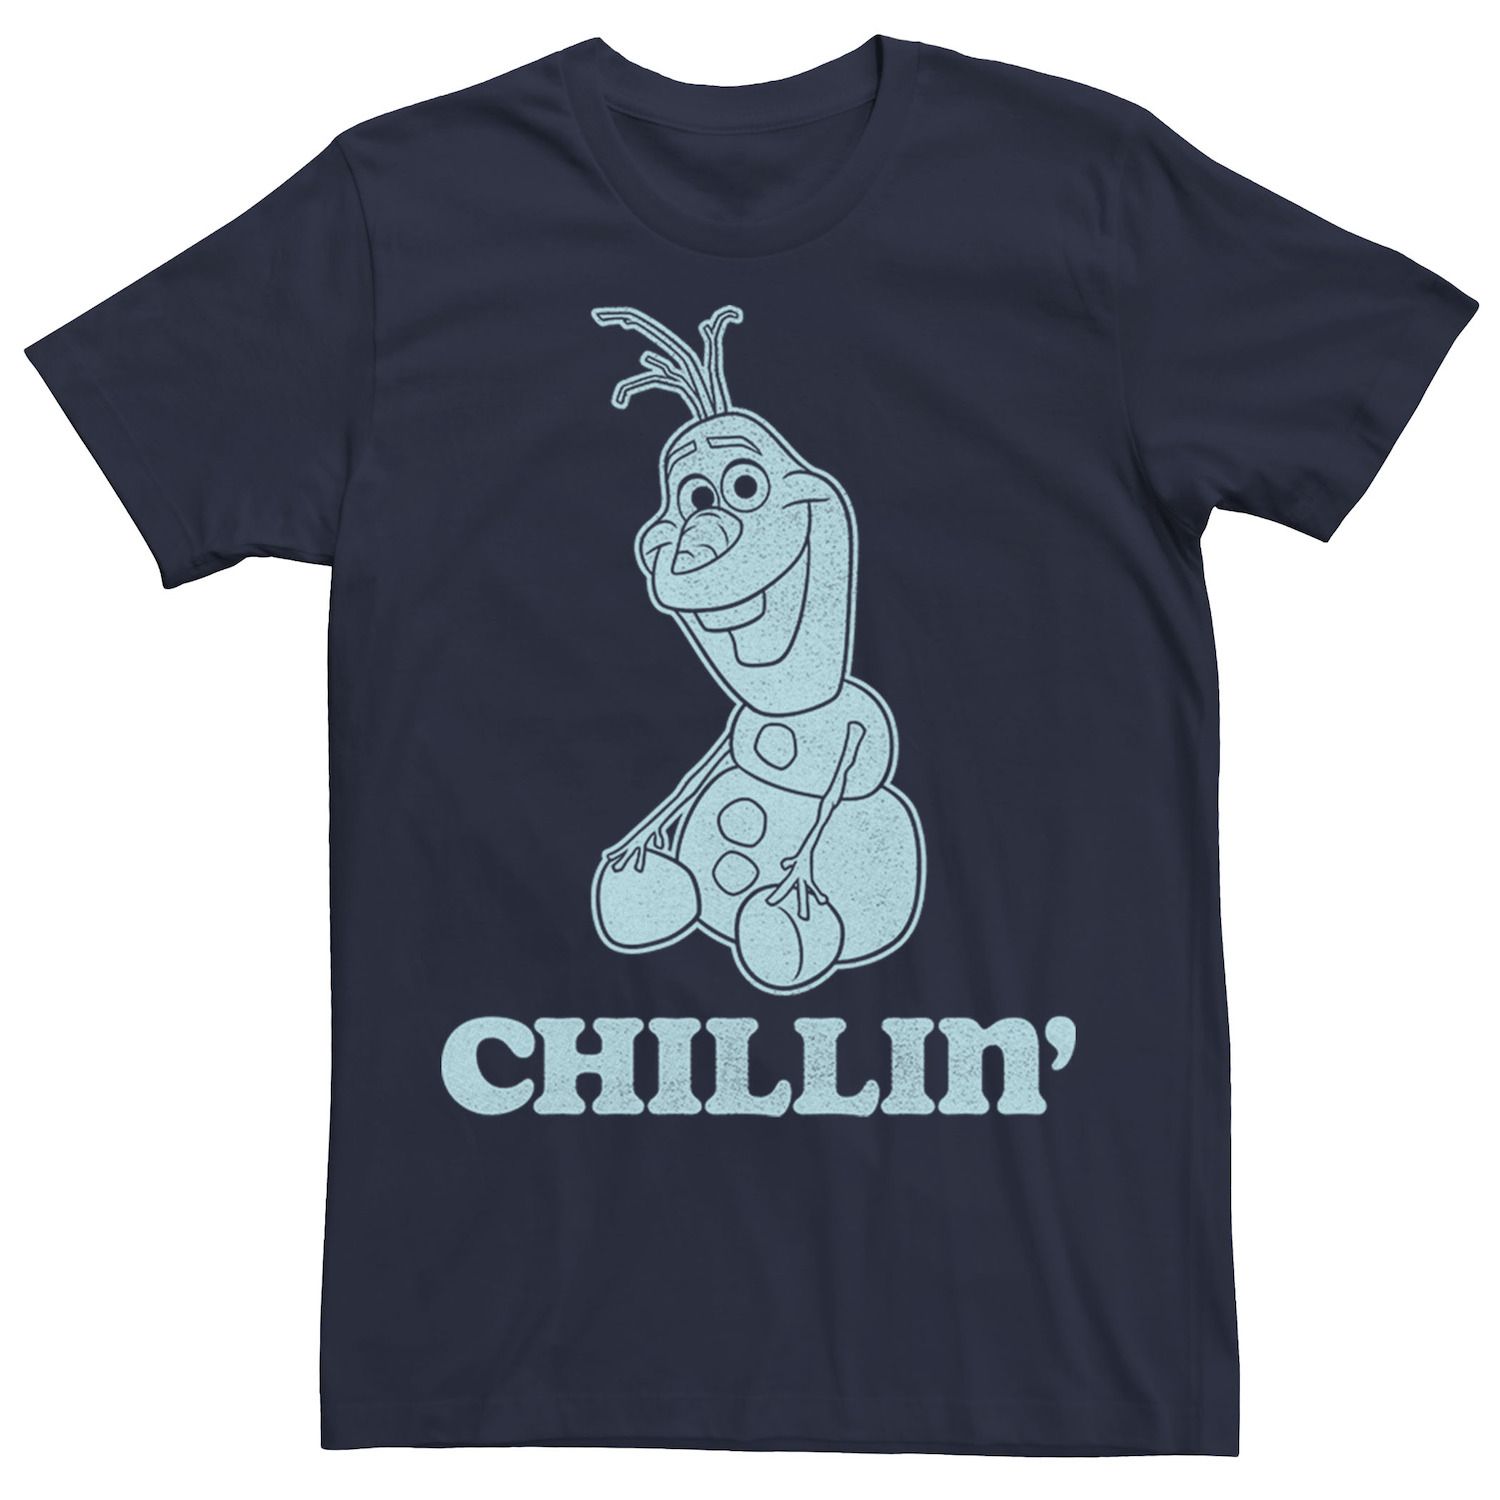 Мужская футболка с портретом Disney Frozen Olaf Chillin'